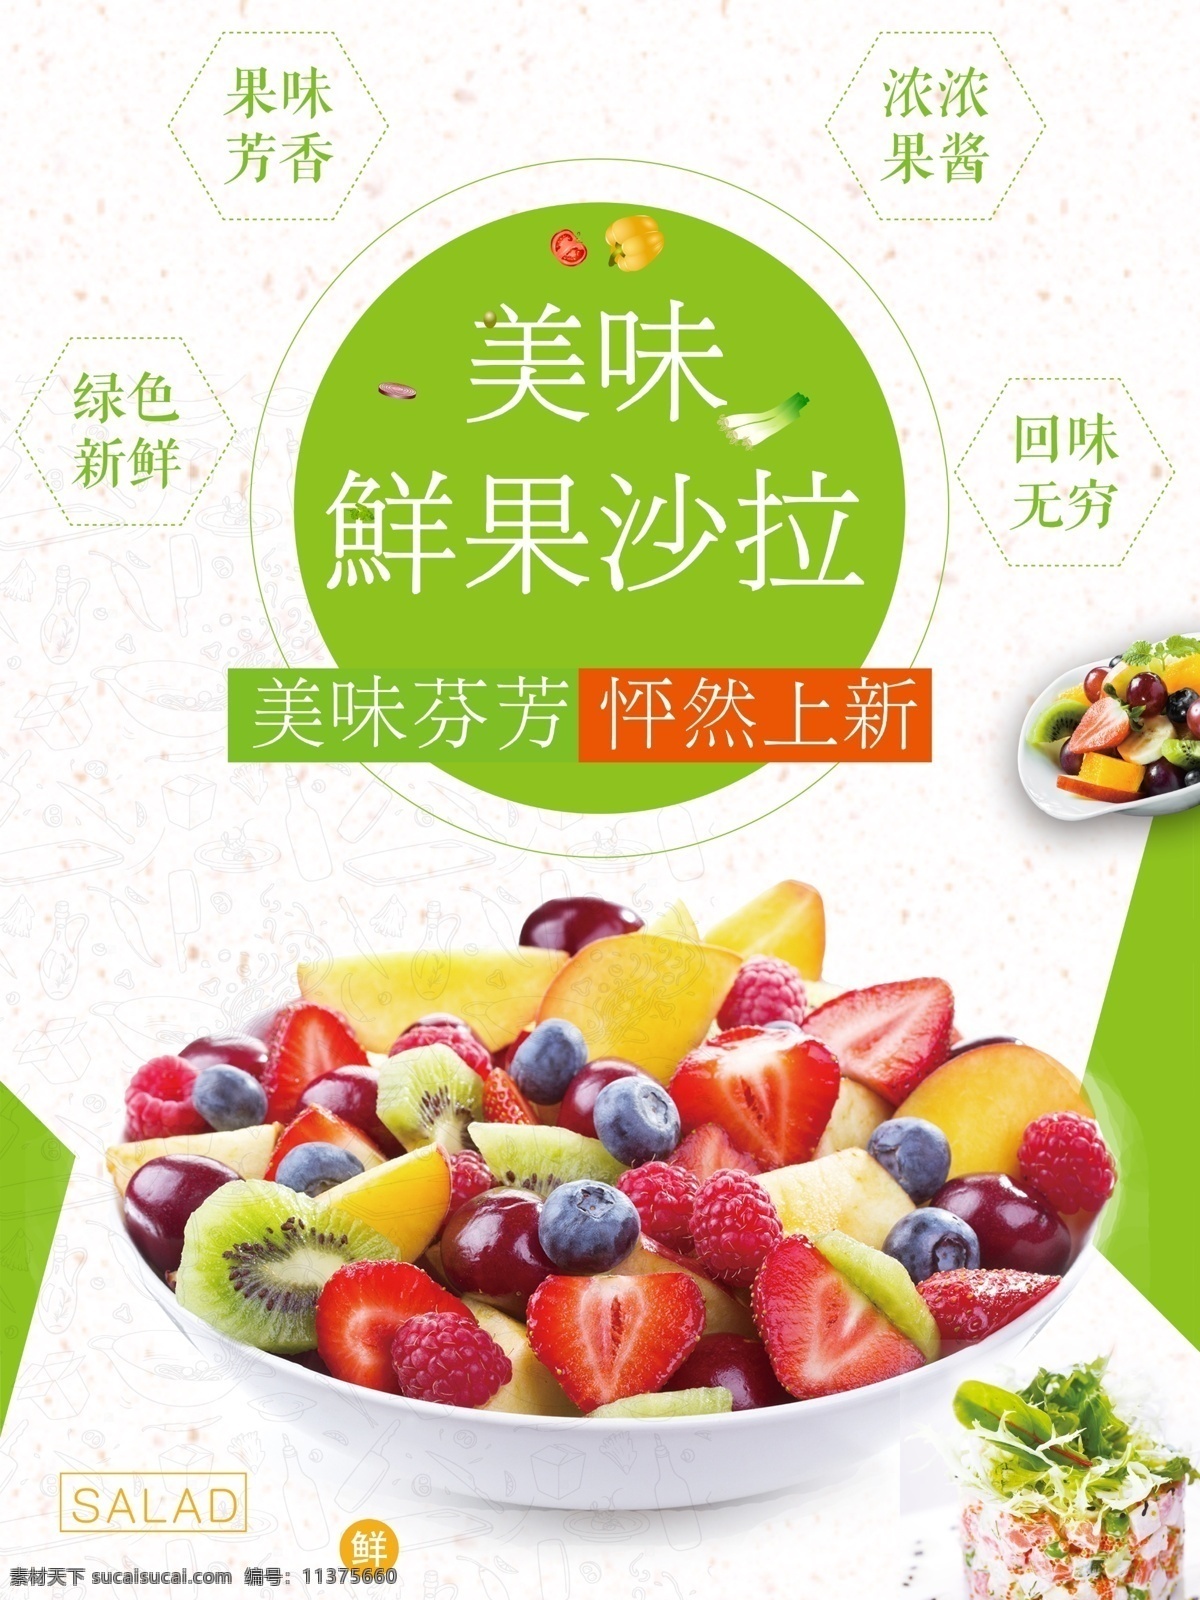 鲜果海报设计 水果 水果海报 水果沙拉 沙拉 健康美味 食品海报 饮食海报 大气海报 绿色食物 美食节海报 美食 水果美食 沙拉展板 沙拉海报